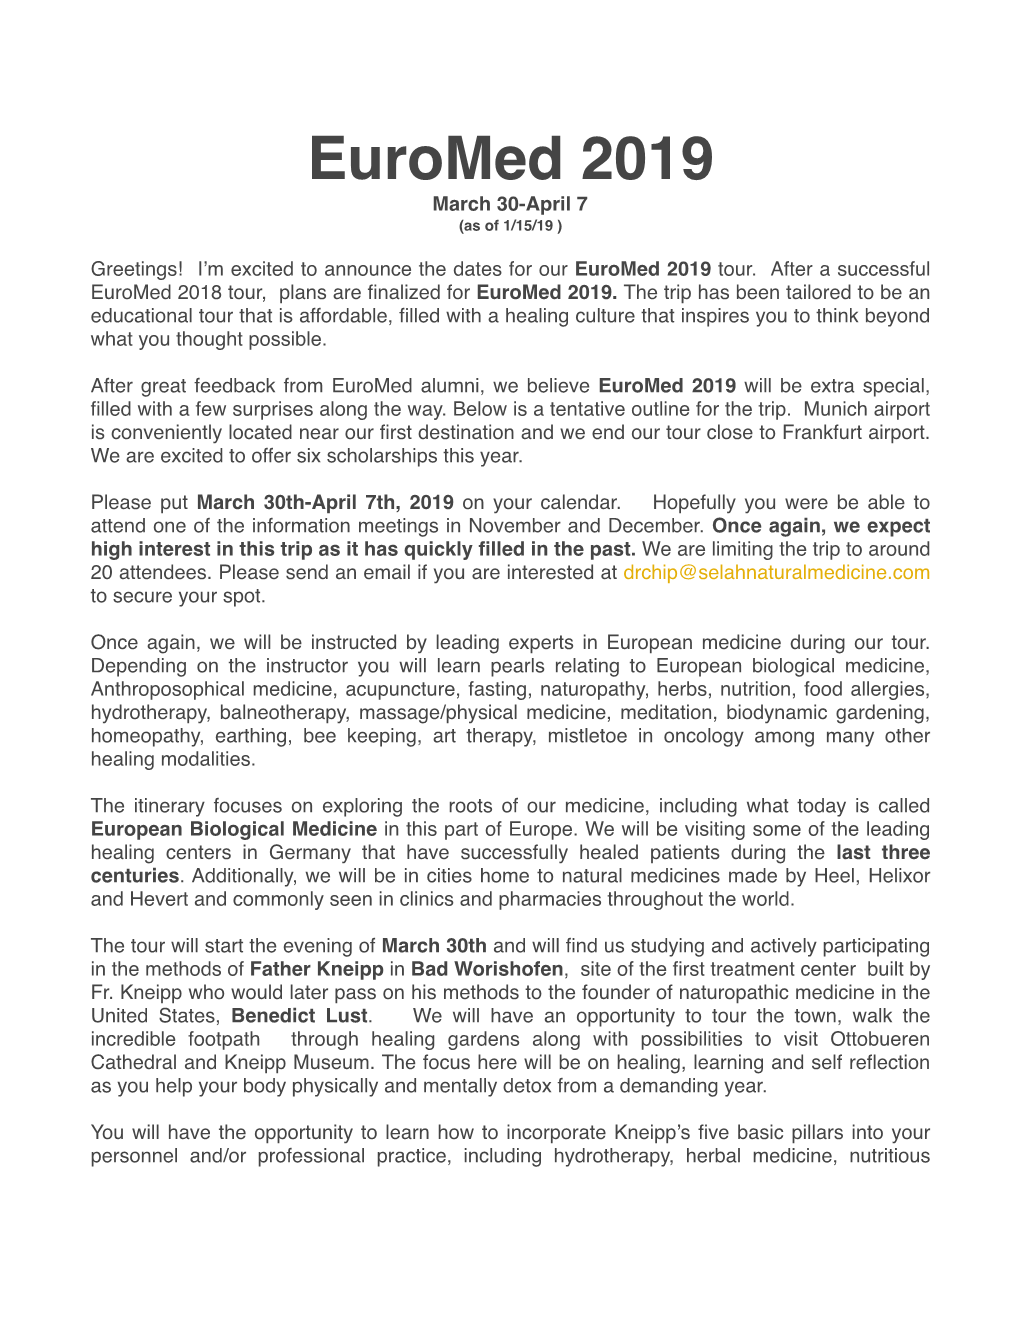 Euromed-2019-Final Trip Info